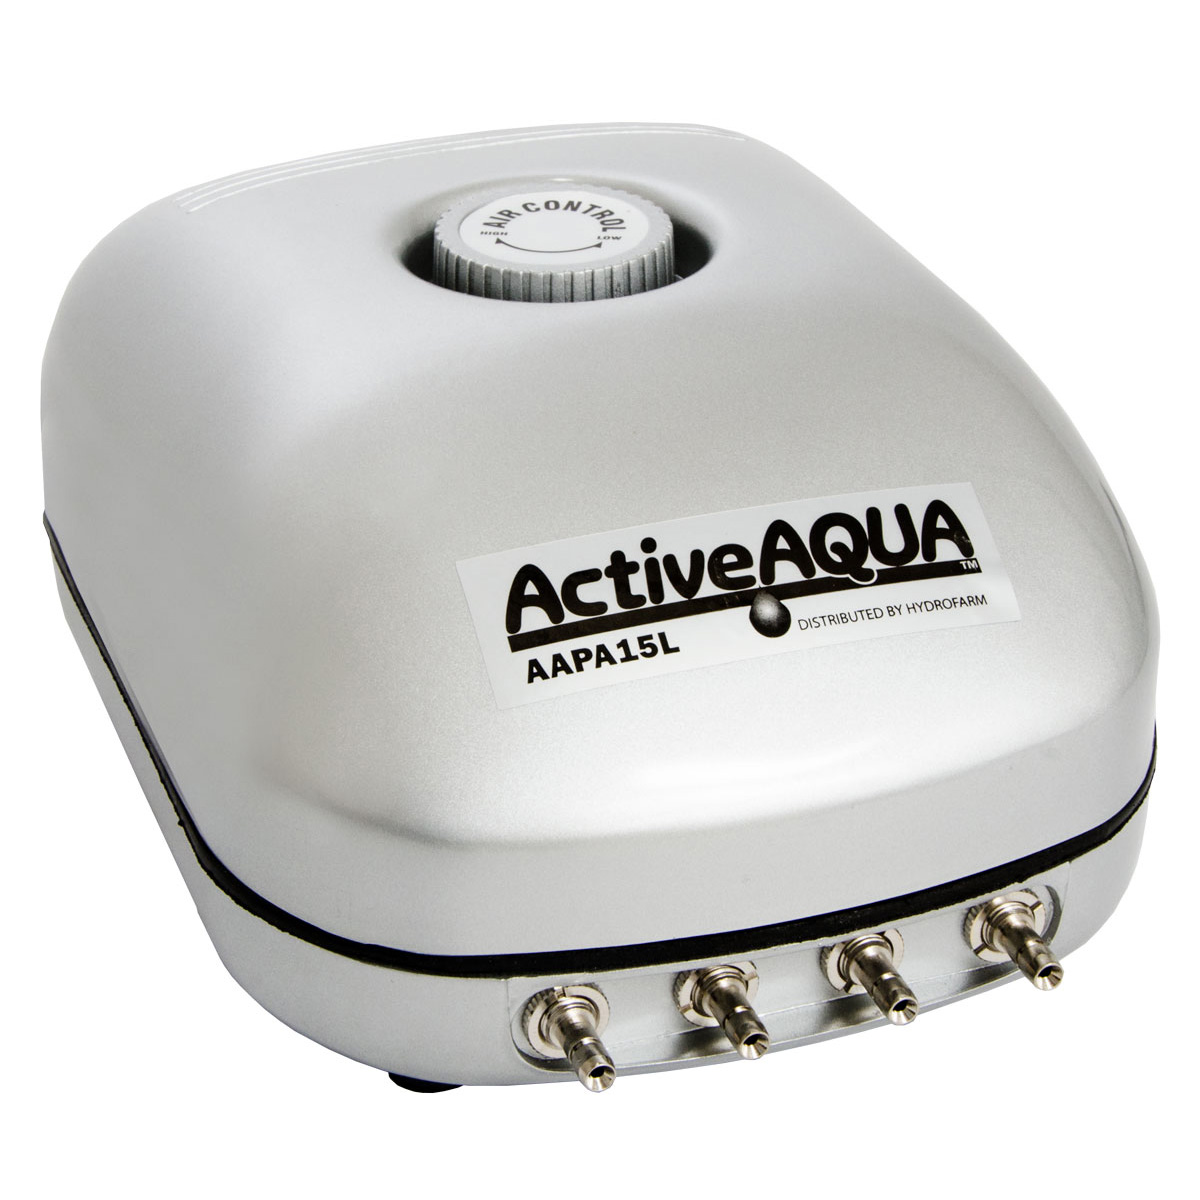 Active Aqua Air Pump 4 Outlet